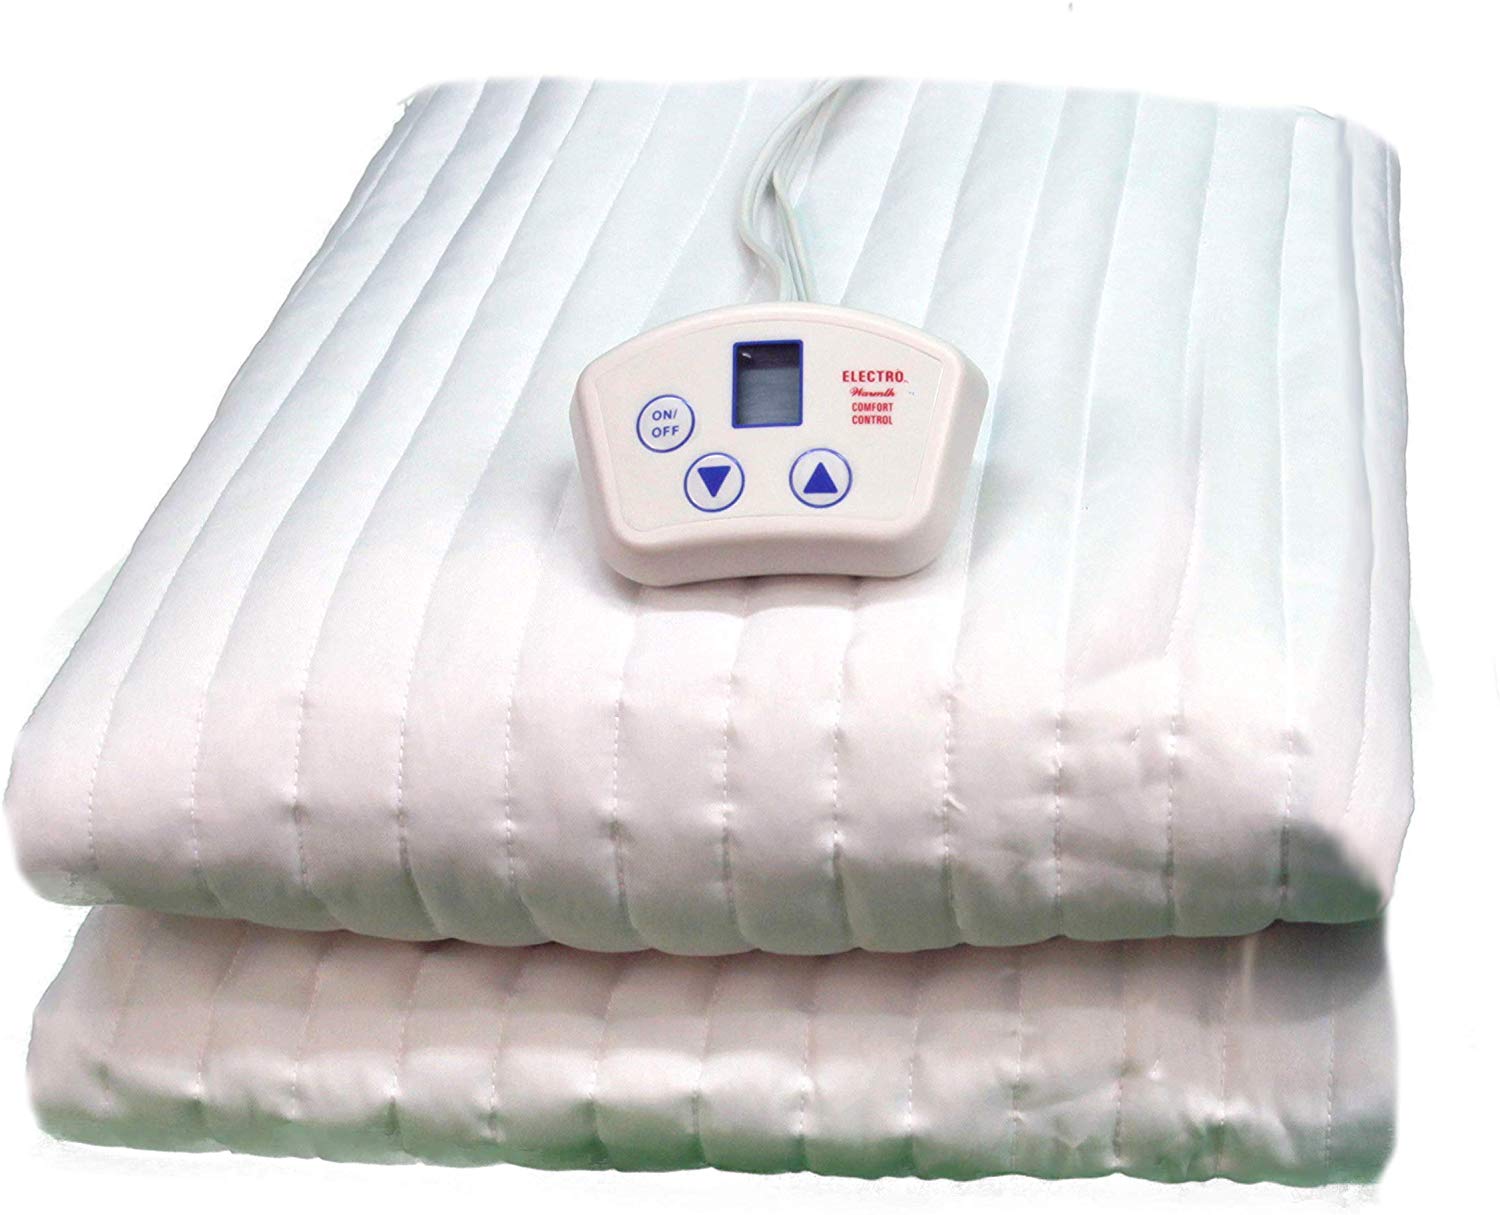 twin xl 84 heated mattress pad